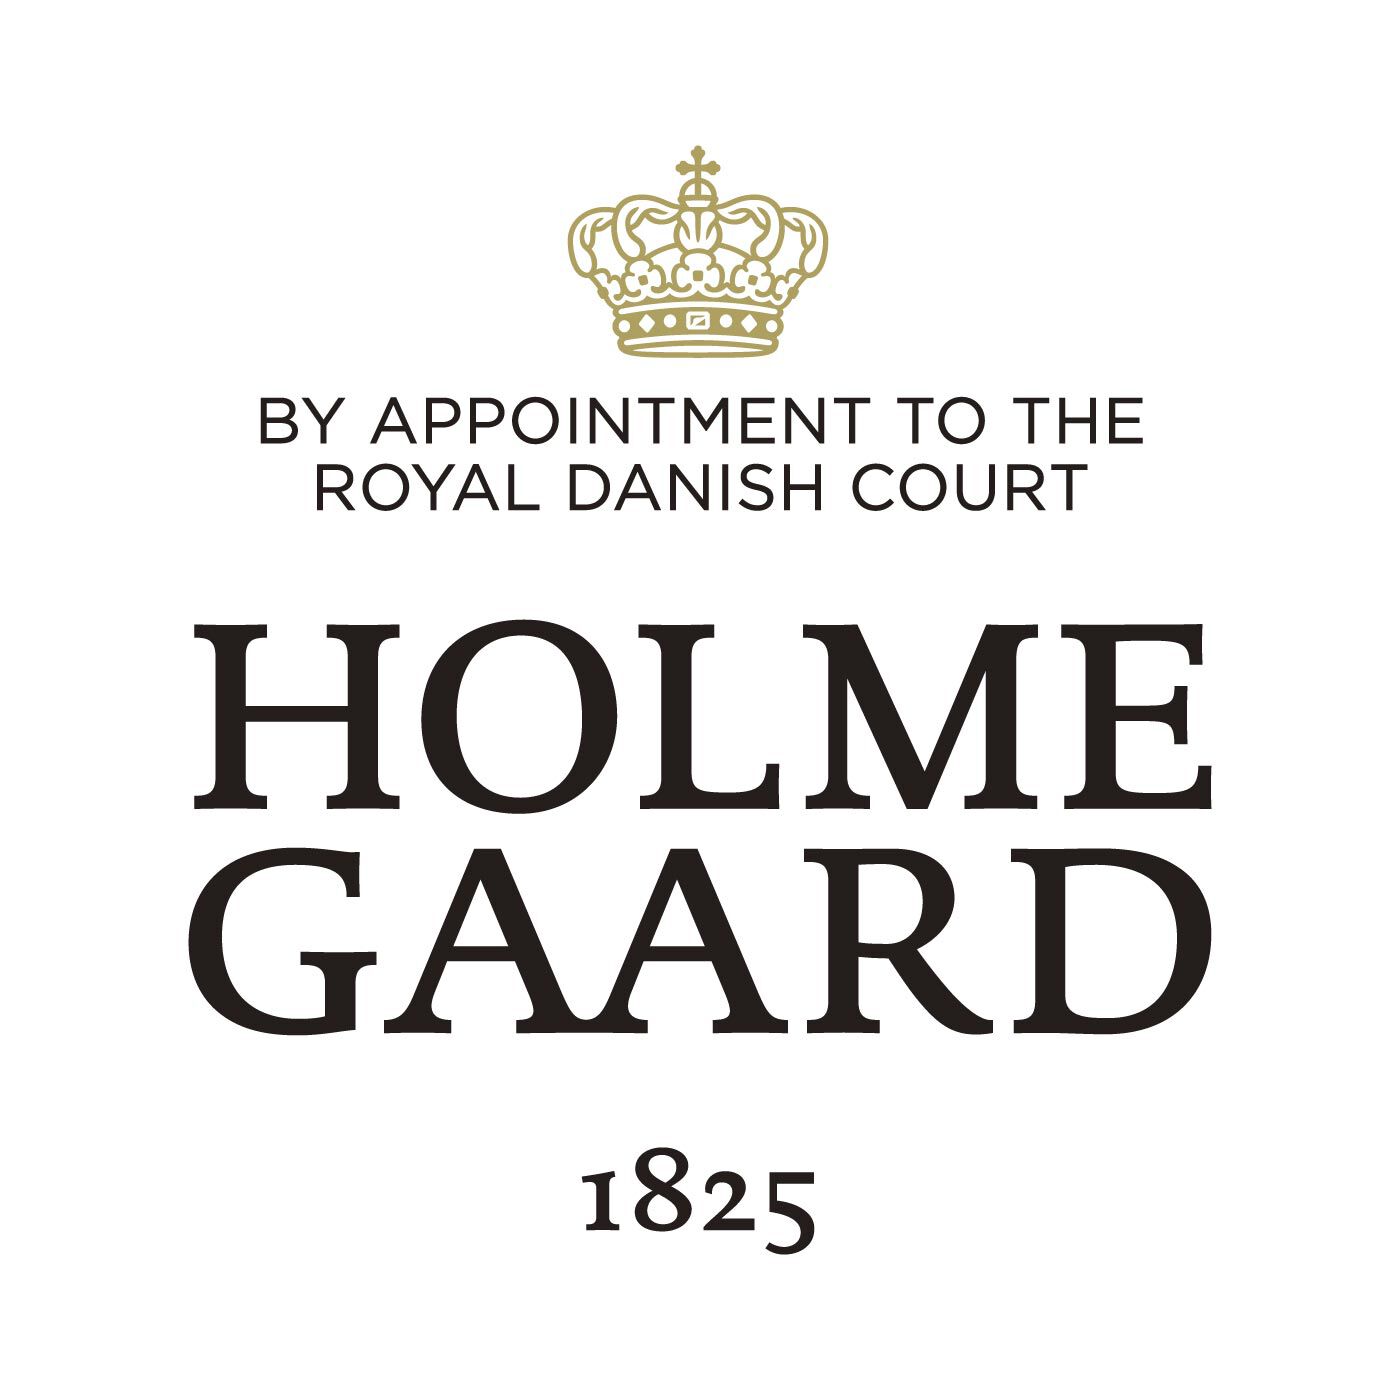 SeeMONO|やさしく灯るおうち時間 HOLMEGAARD　キャンドルランタン|HOLMEGAARD（ホルムガード）は、1825年にデンマークに生まれた伝統あるガラスブランドです。1900年代、多くの芸術家が手掛け始めるホルムガードの商品は、そのクオリティの高さからデンマーク王室 御用達ブランドに選ばれました。熟練の職人たちによる吹きガラス製法で生み出されるユニークなデ ザインのガラス製品は世界中の美術館に所蔵されています。